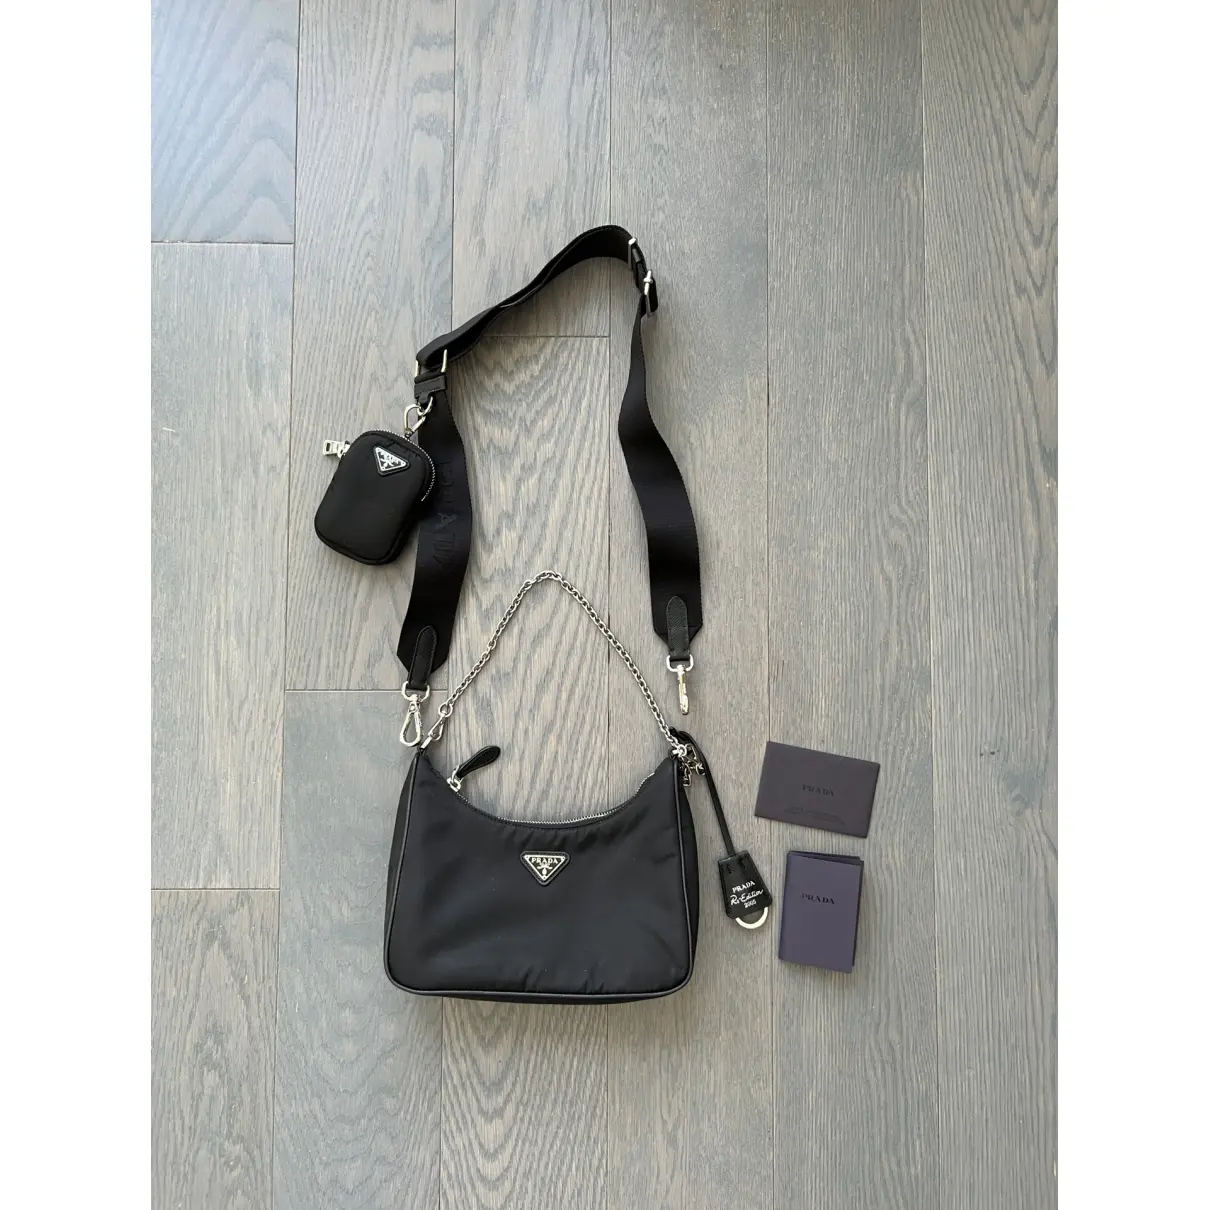 Buy Prada Re-Edition 2005 handbag online